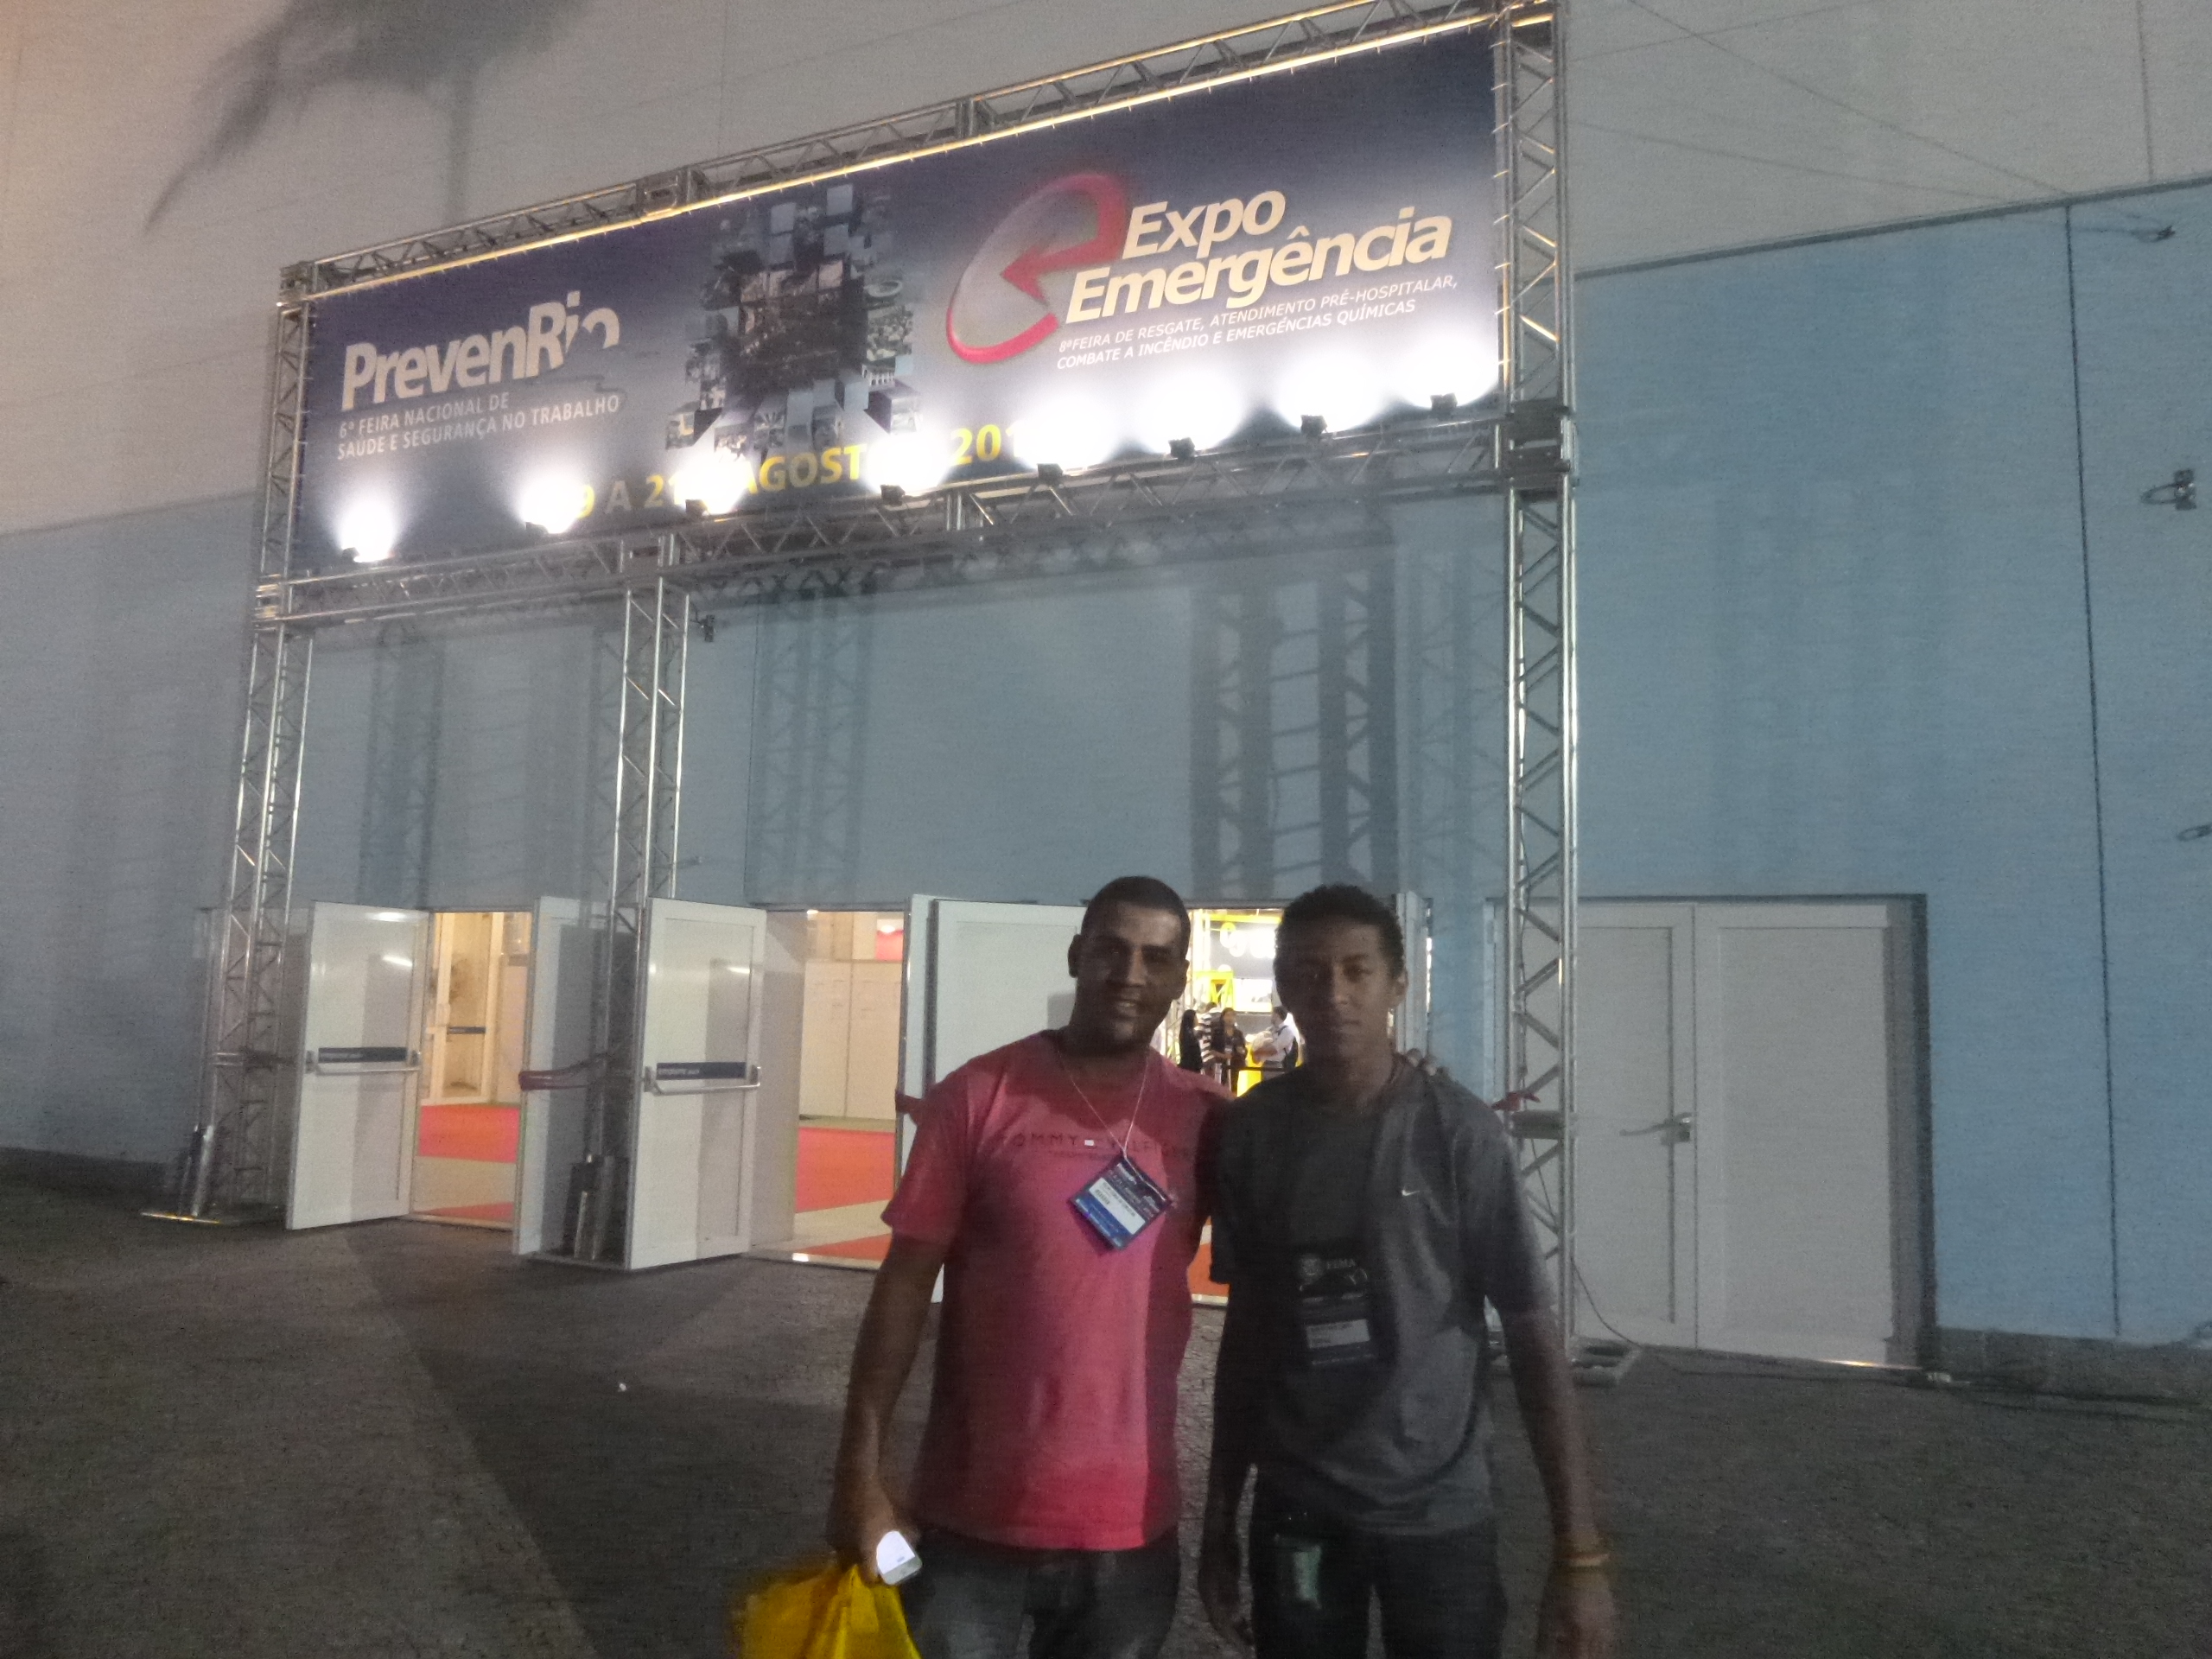 Rio de Janeiro Emergency Expo